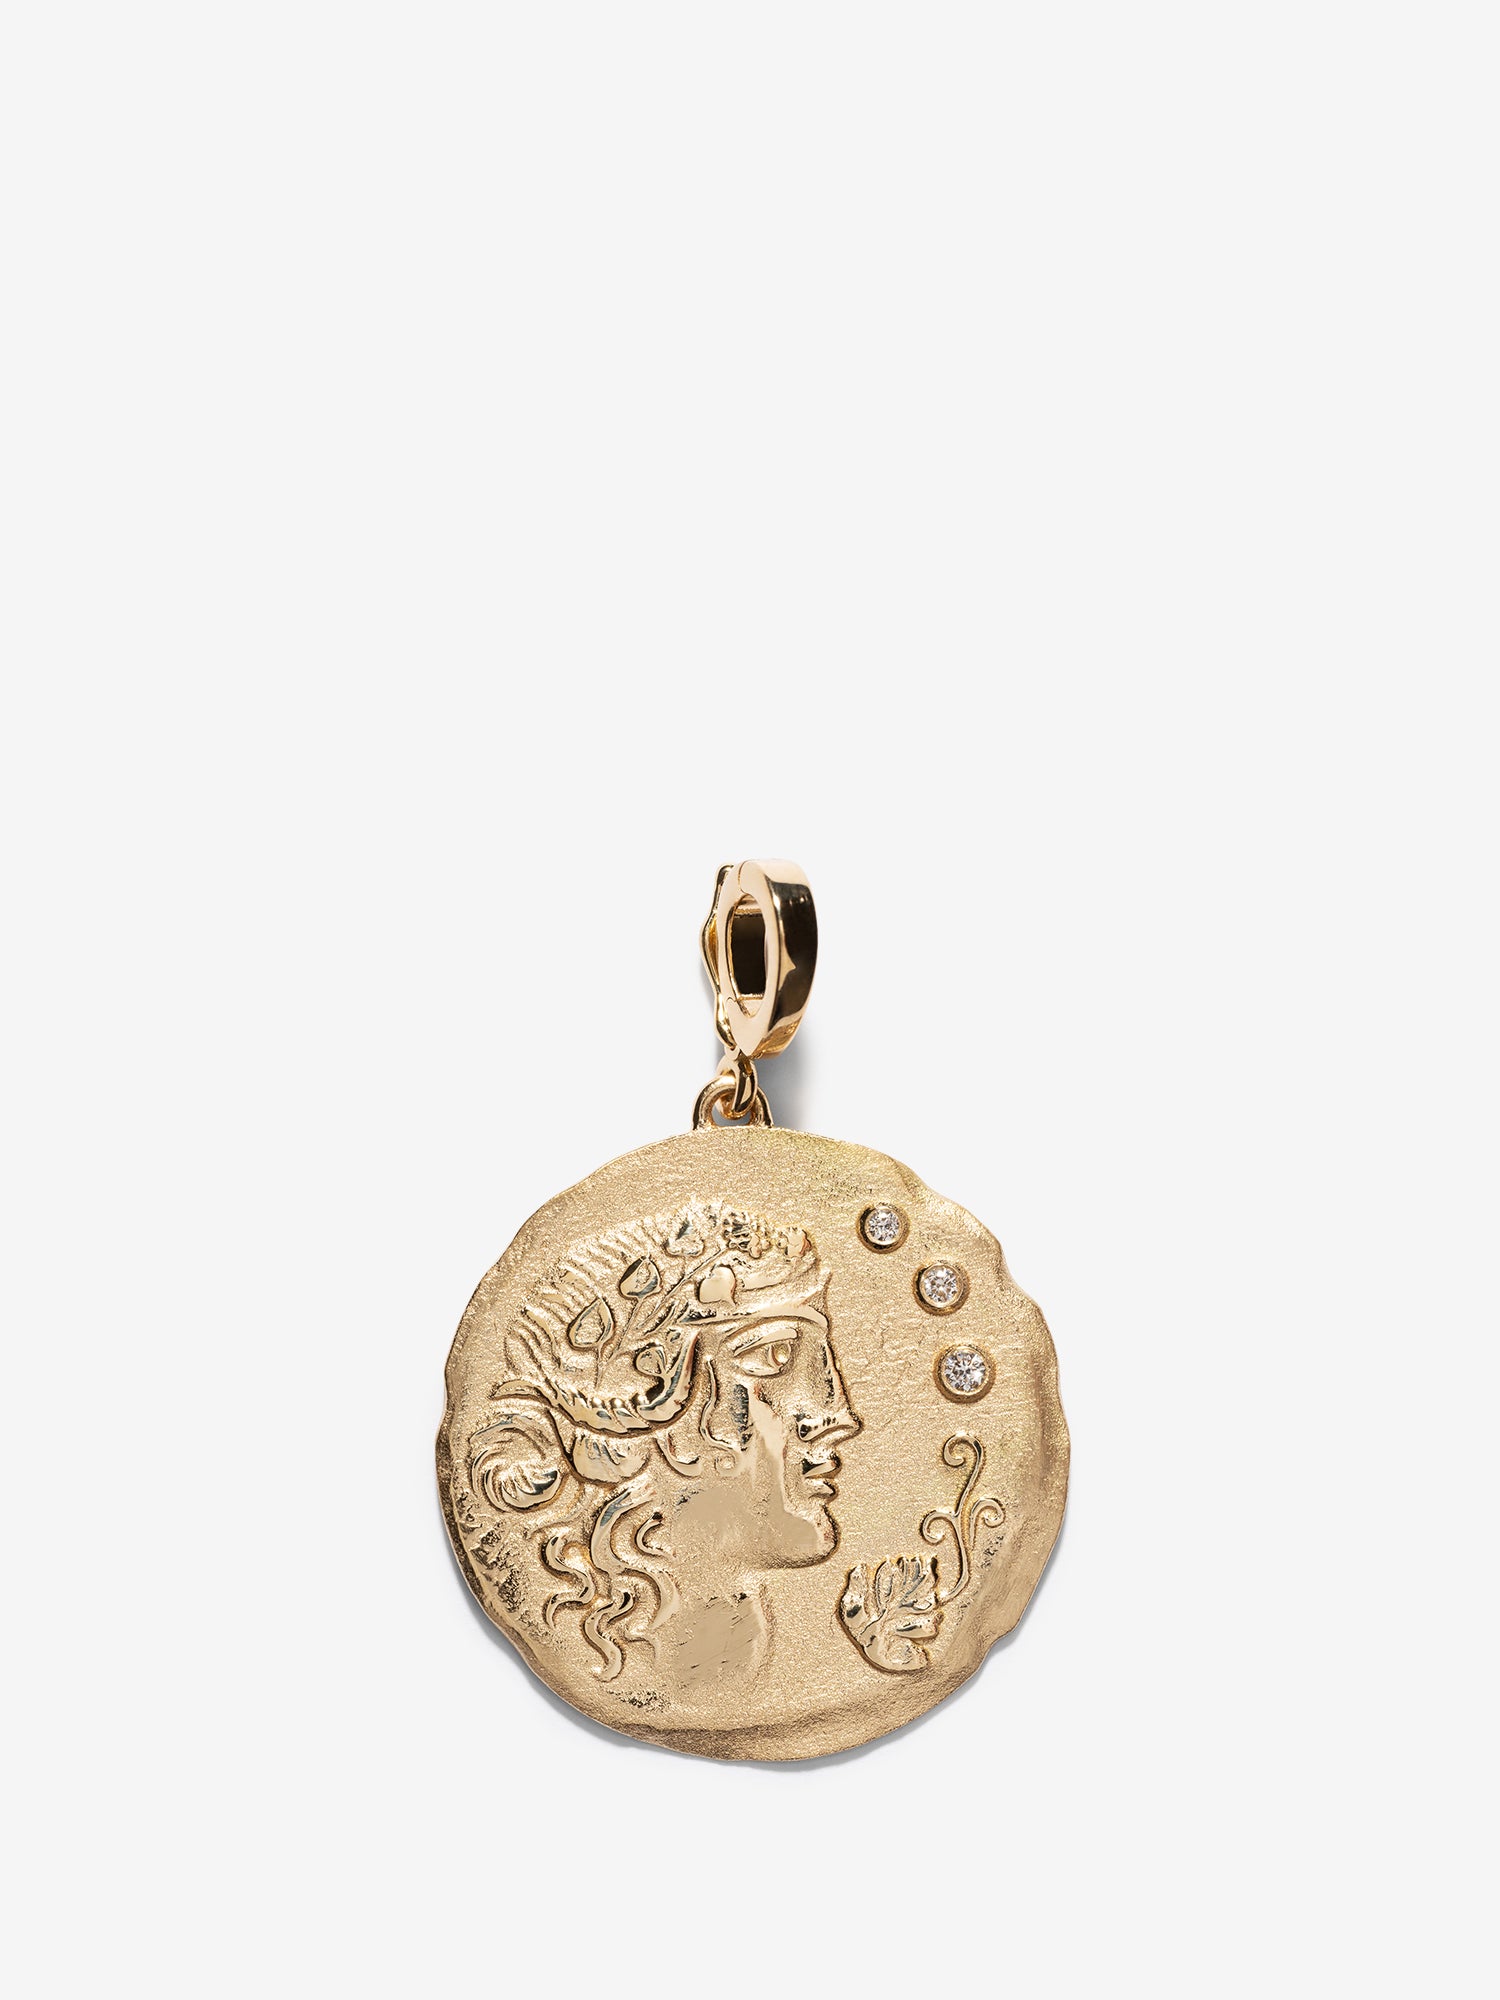 ディオニュソス大コイン